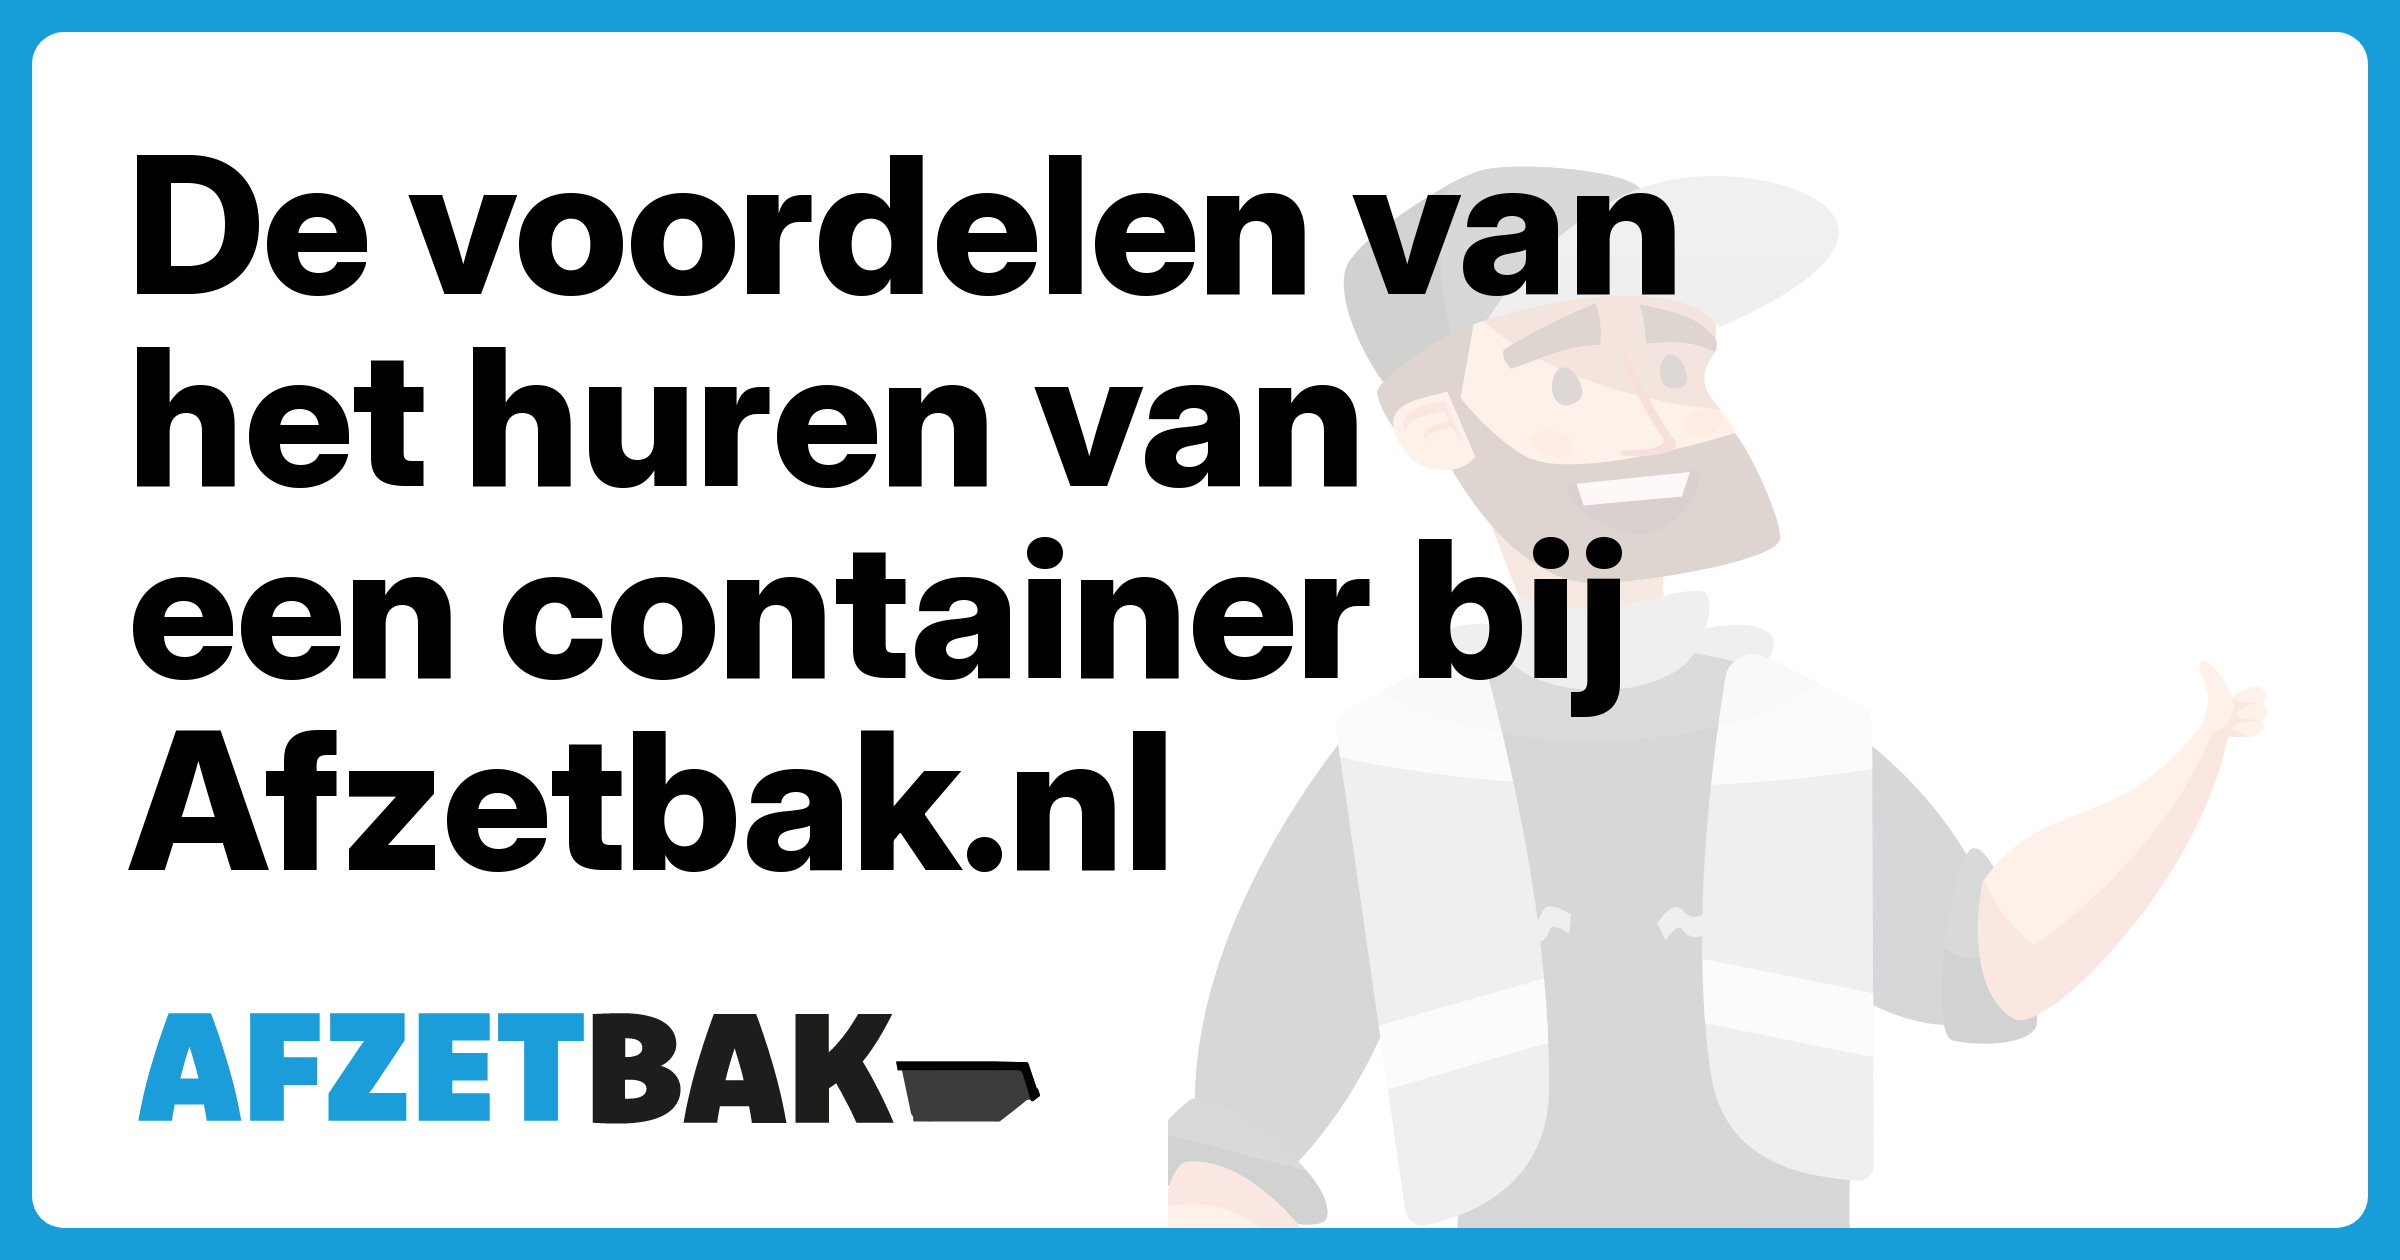 De voordelen van het huren van een container bij Afzetbak.nl - Afzetbak.nl